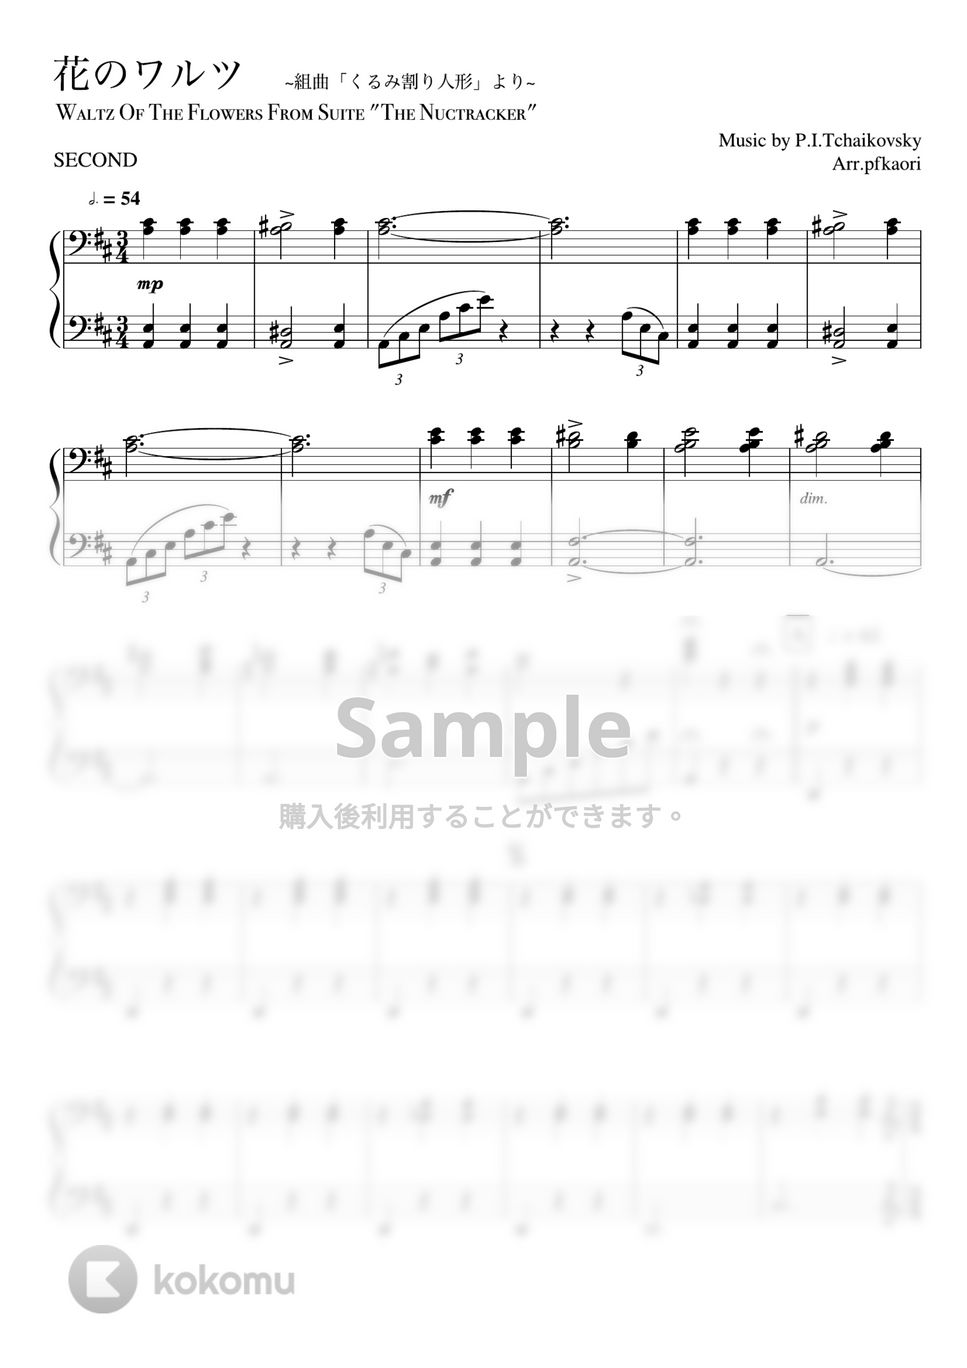 チャイコフスキー - 花のワルツ (ピアノ連弾/中級) by pfkaori